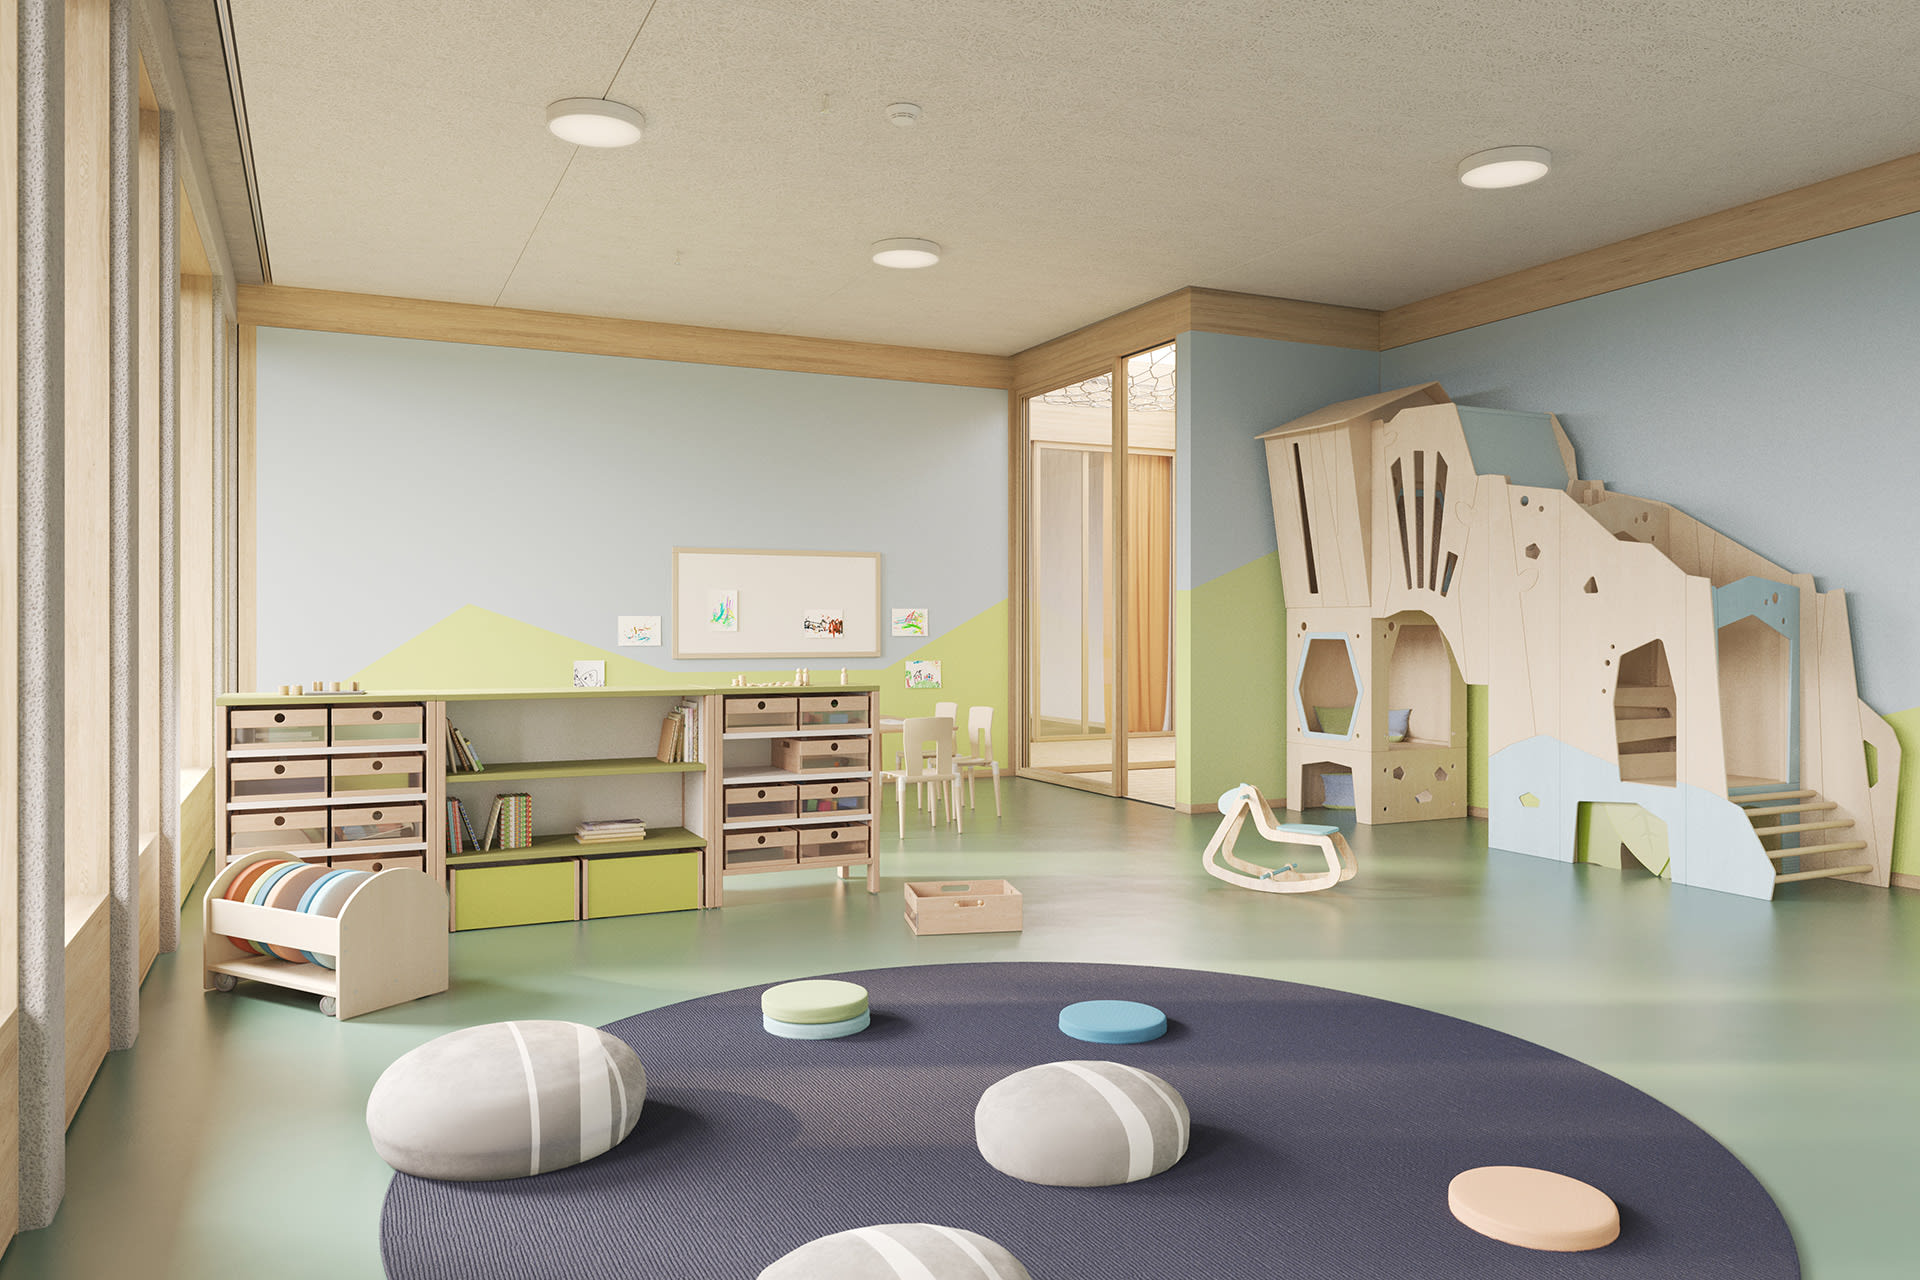  Farbgestaltung von Räumen |  Raum mit Spielturm in Naturholz und blauen und grünen Elementen steht an der Wand in der Mitte liegt ein graue runde Matte mit blauen, grünen und grauen Sitzkissen